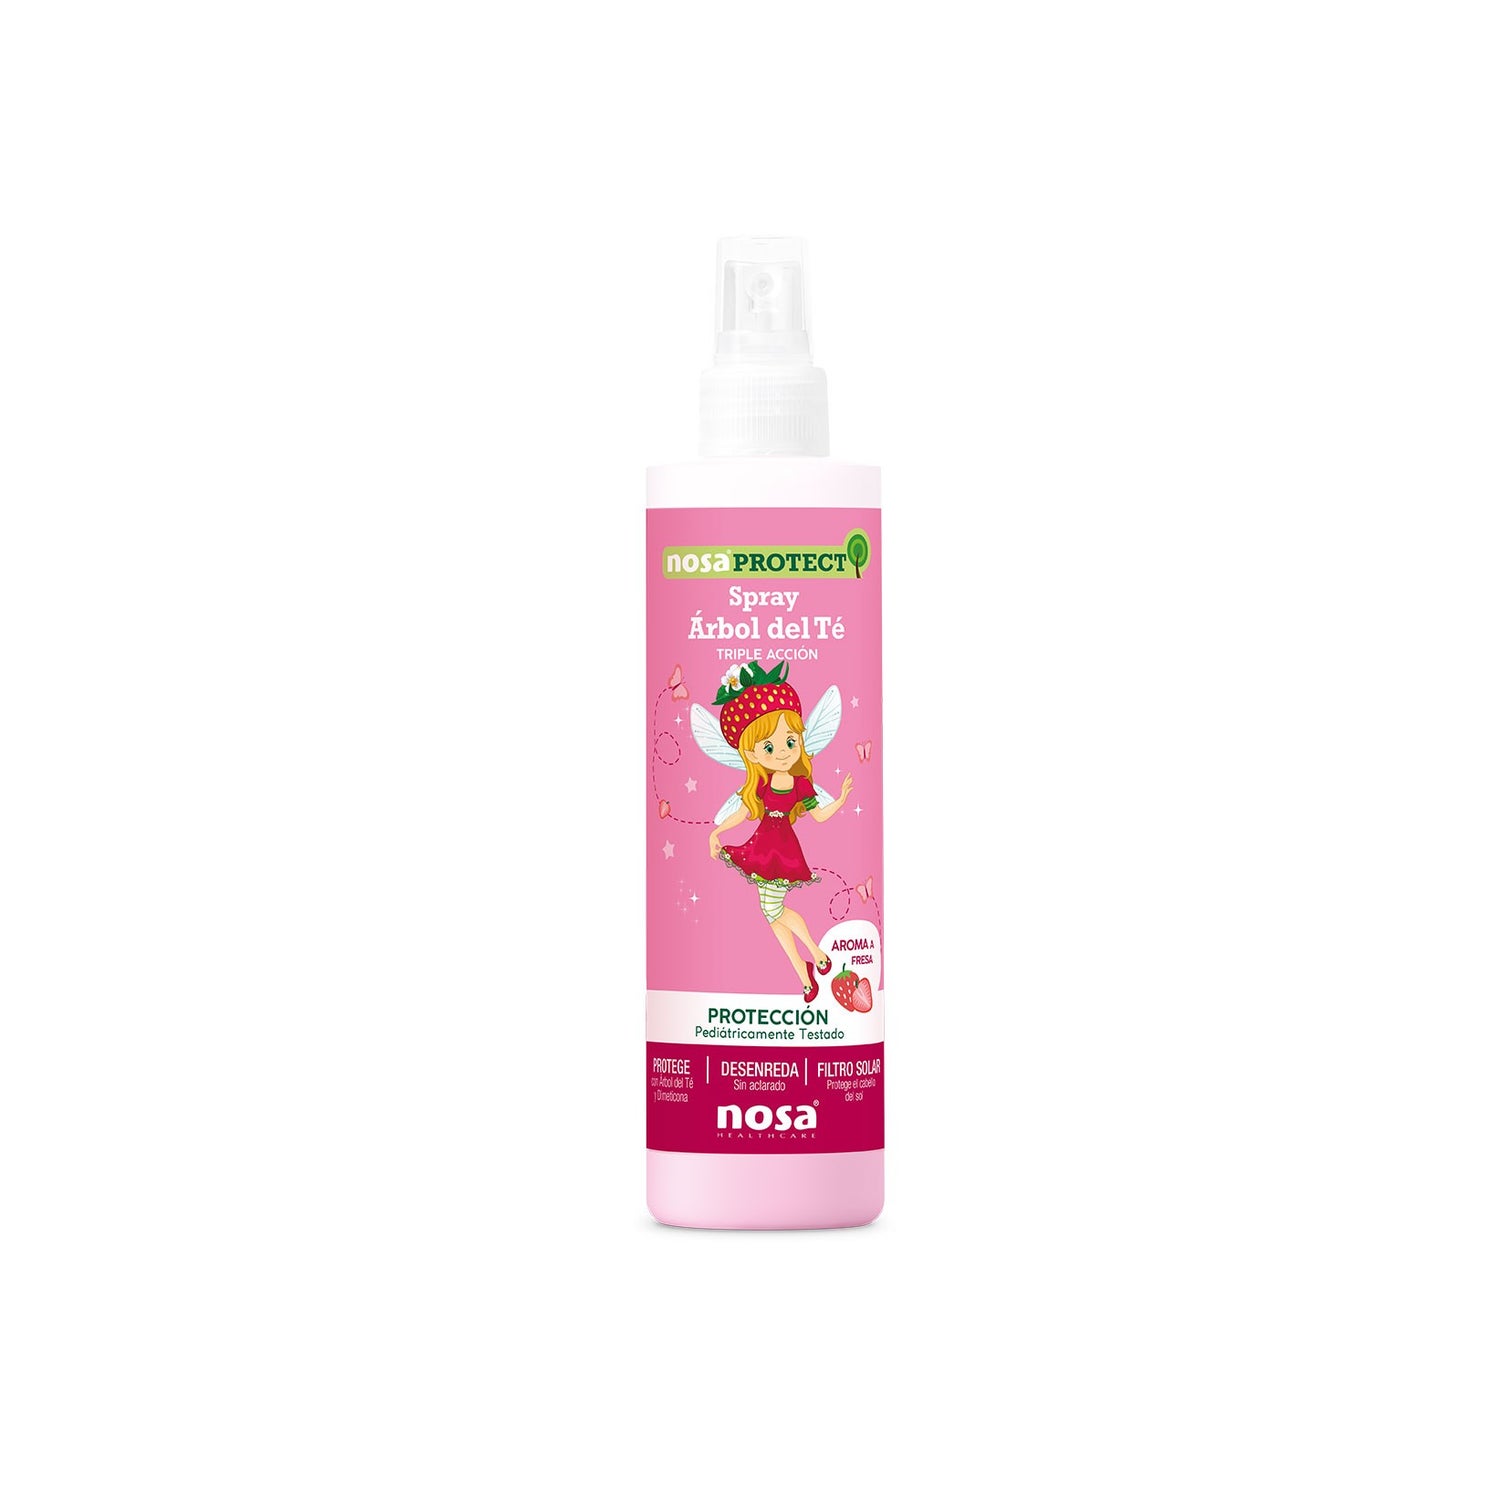 Neositrin spray antipiojos gel liquido 60ml - Farmacia en Casa Online